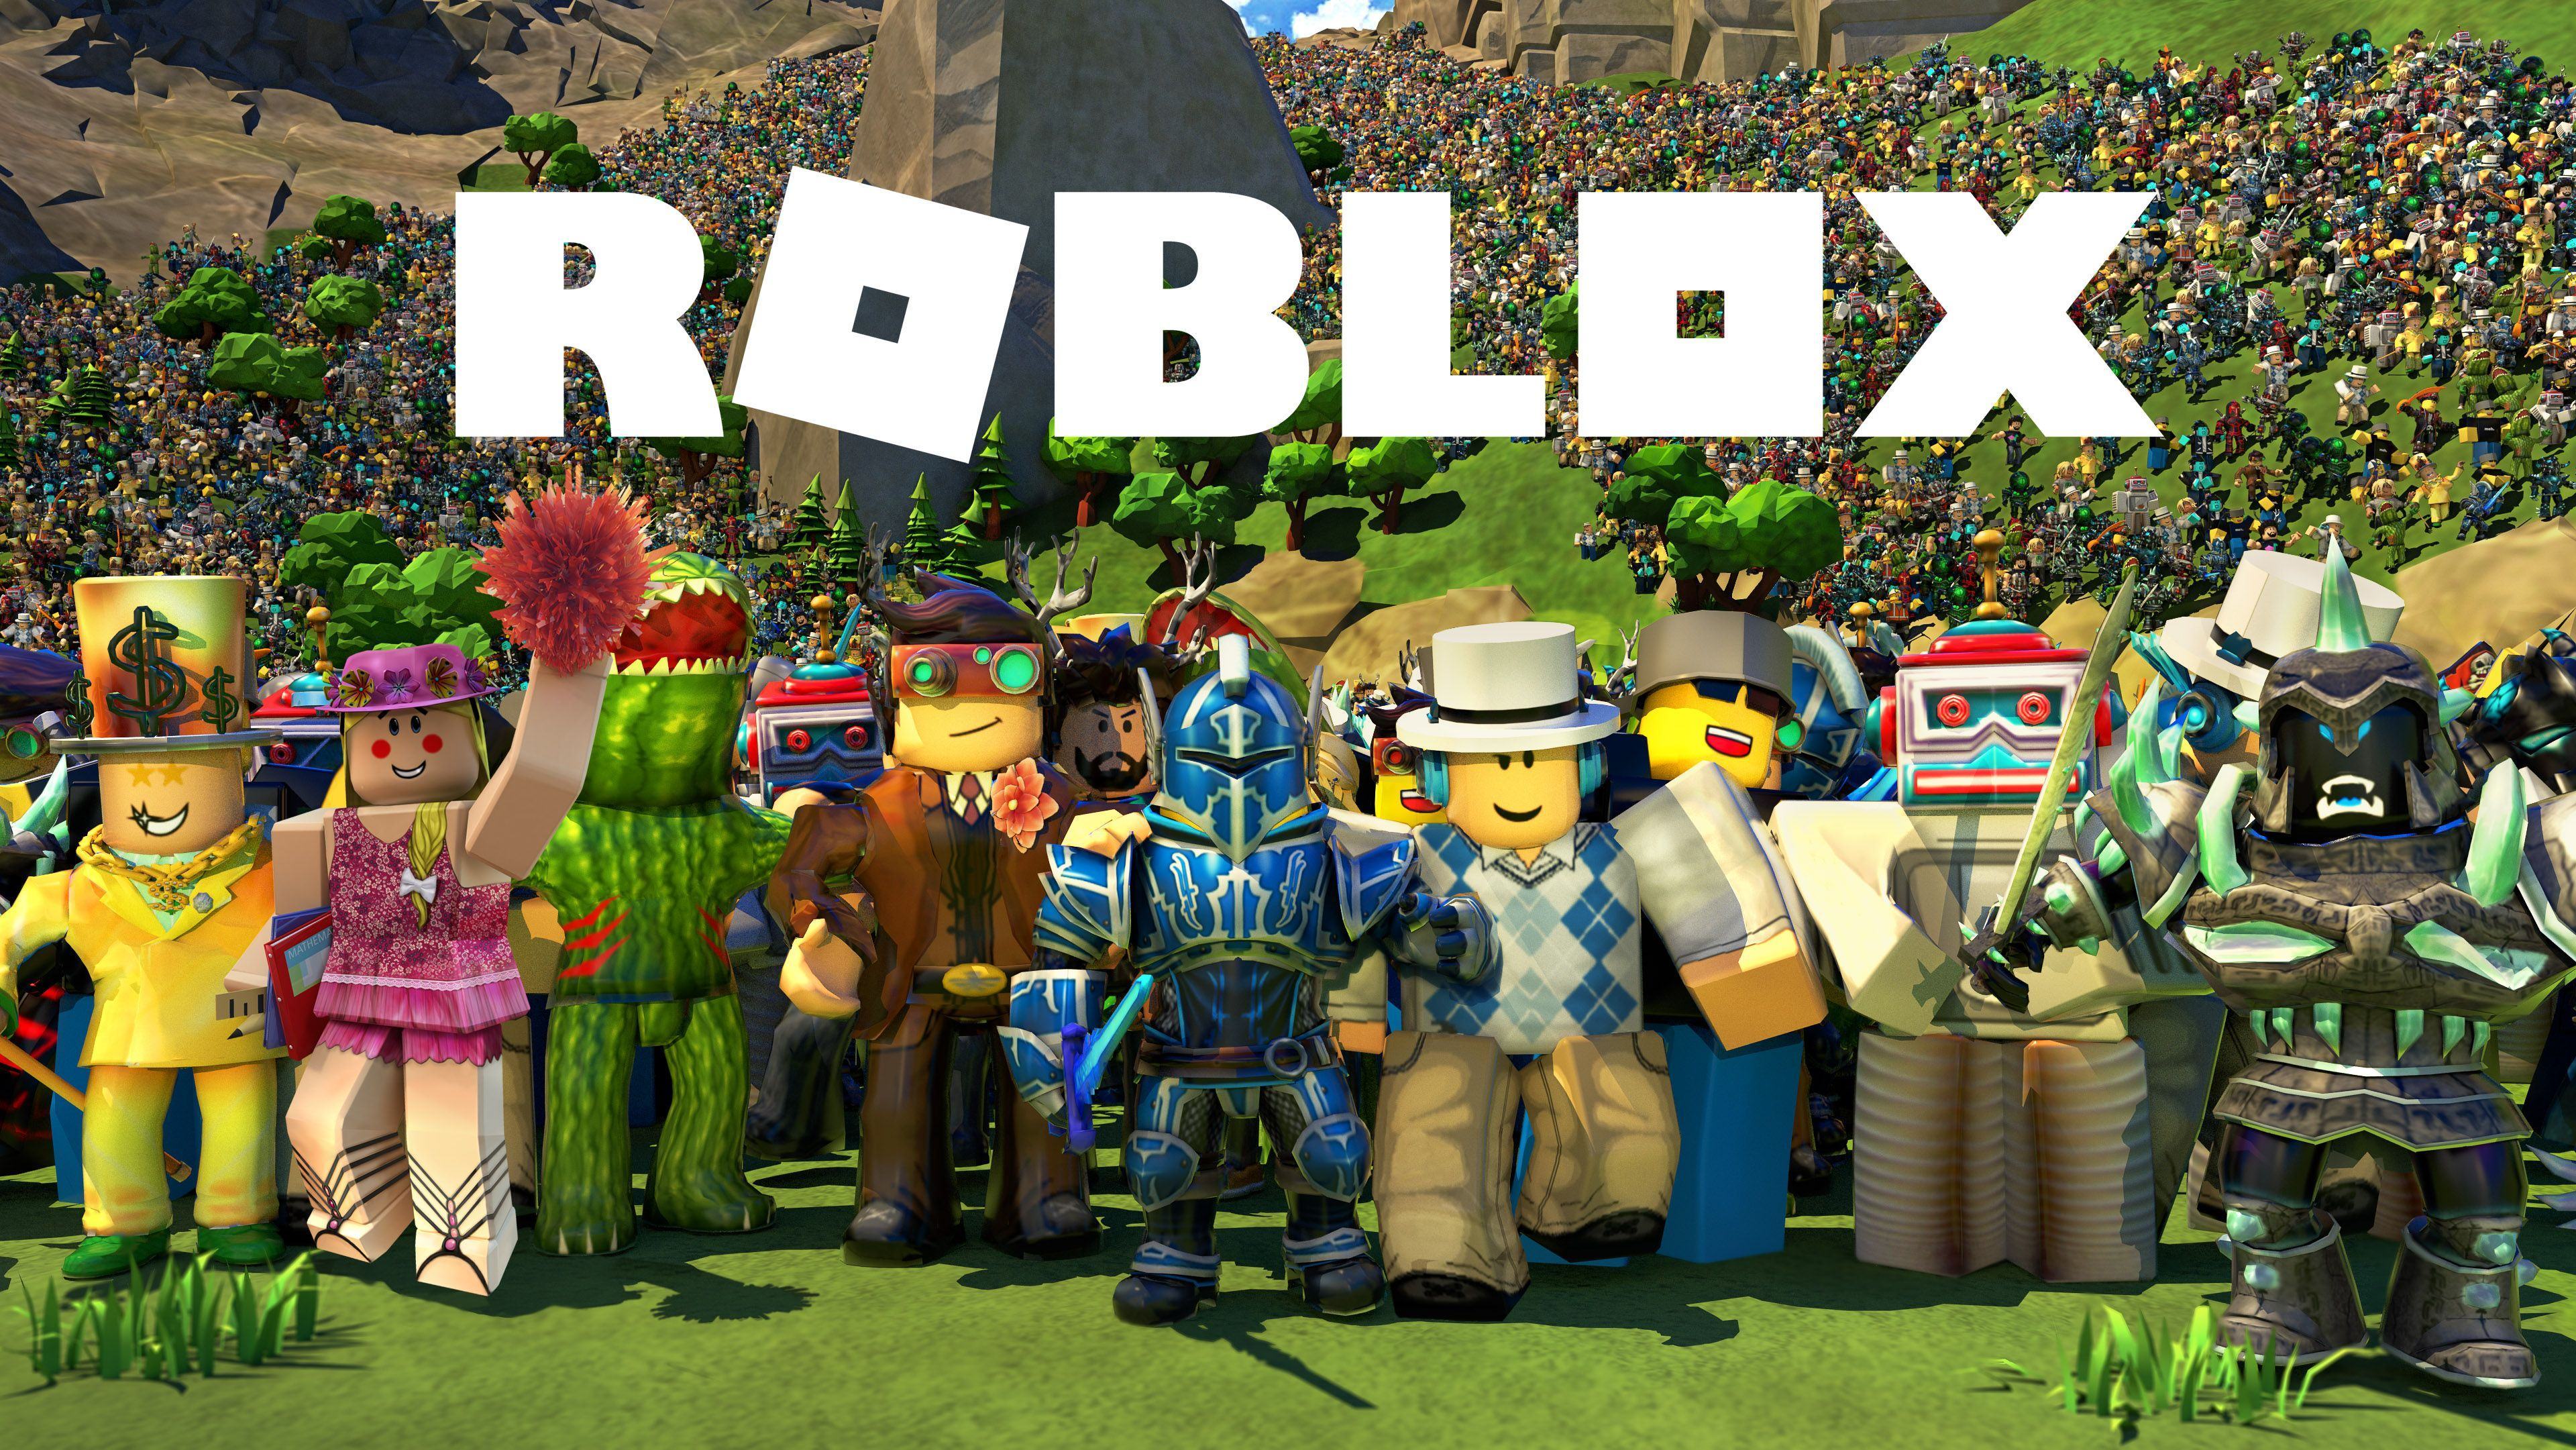 Muốn có hình nền độc đáo, phong phú cho màn hình Roblox của mình? Hãy xem ngay hình nền Roblox tuyệt đẹp này và khám phá thế giới đầy sắc màu của game Roblox!